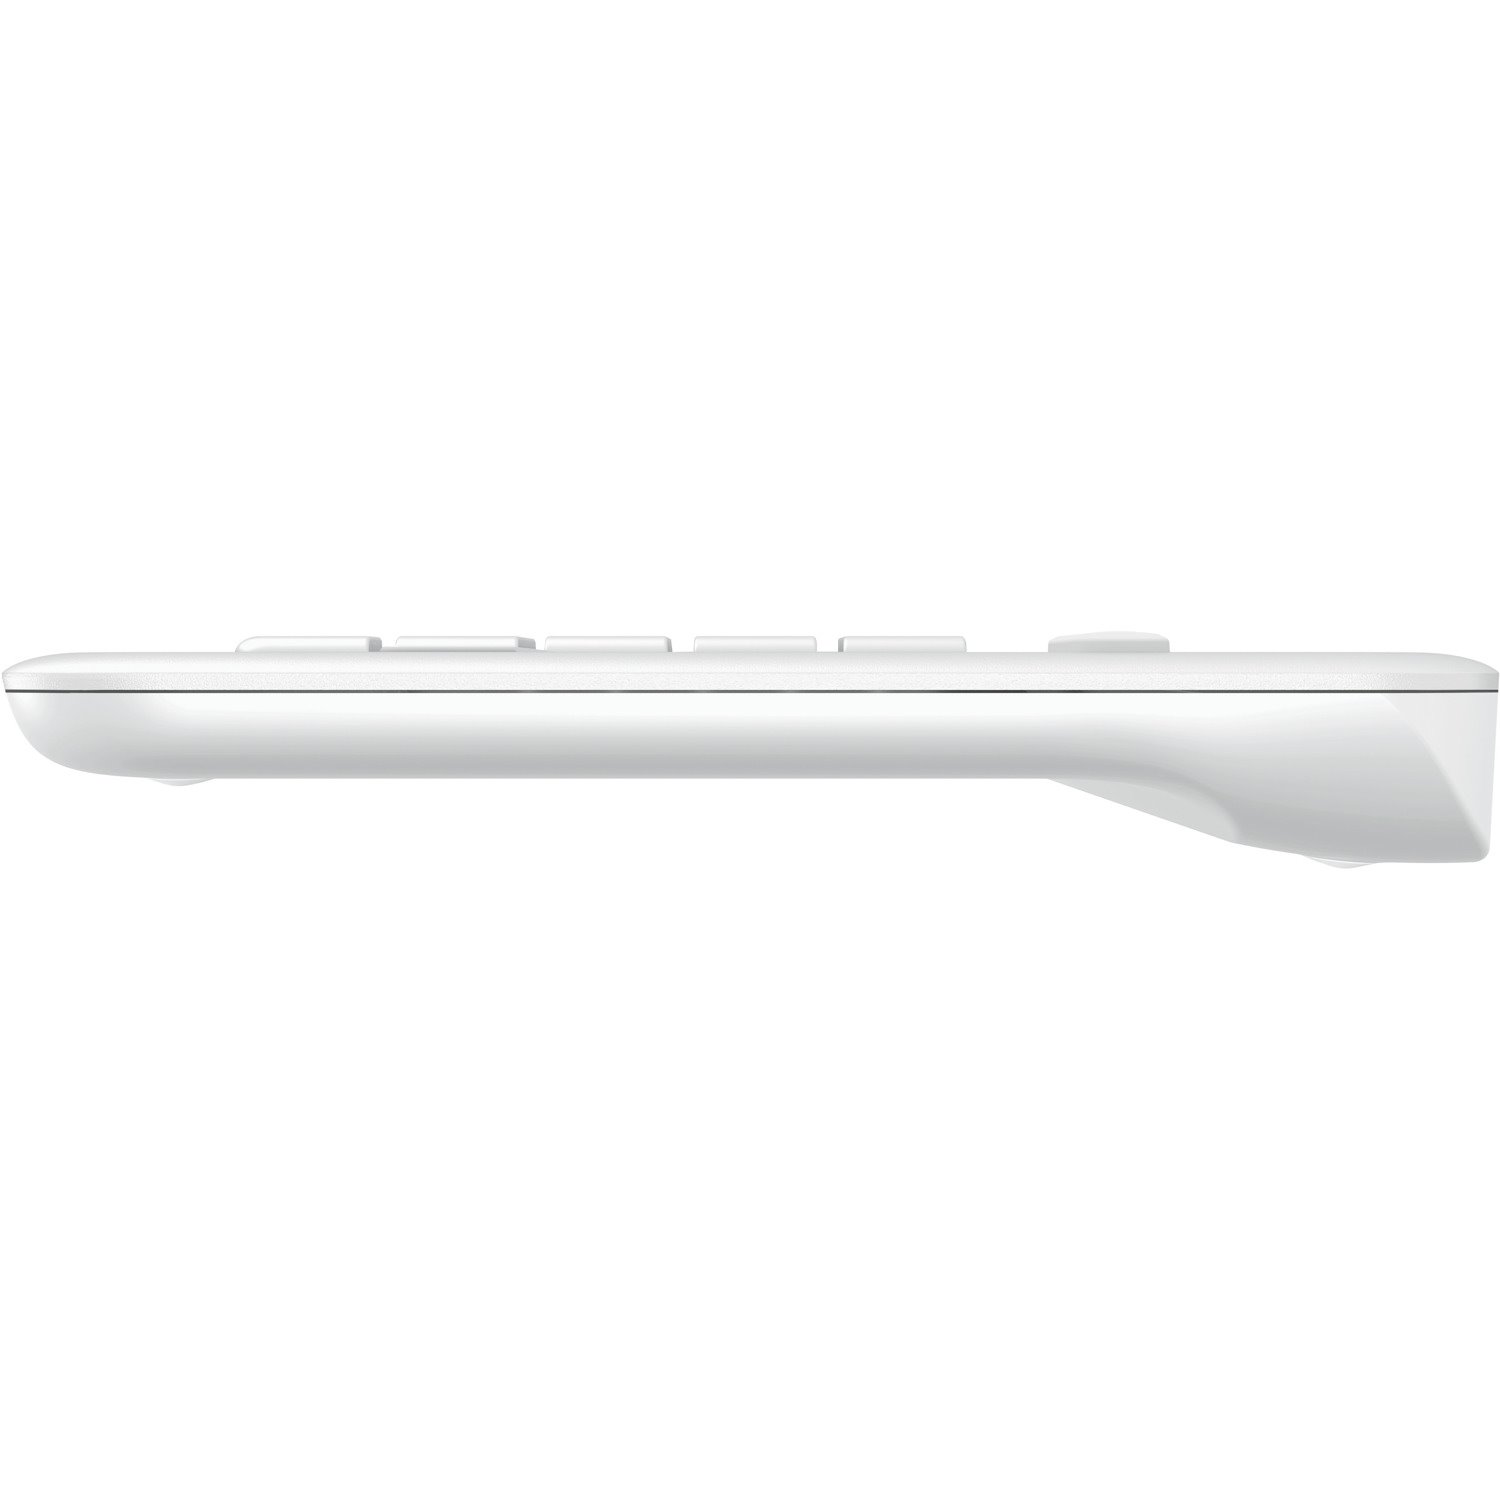 Logitech K400 Plus Keyboard - Wireless Connectivity - USB Interface - TouchPad - QWERTY Layout - White